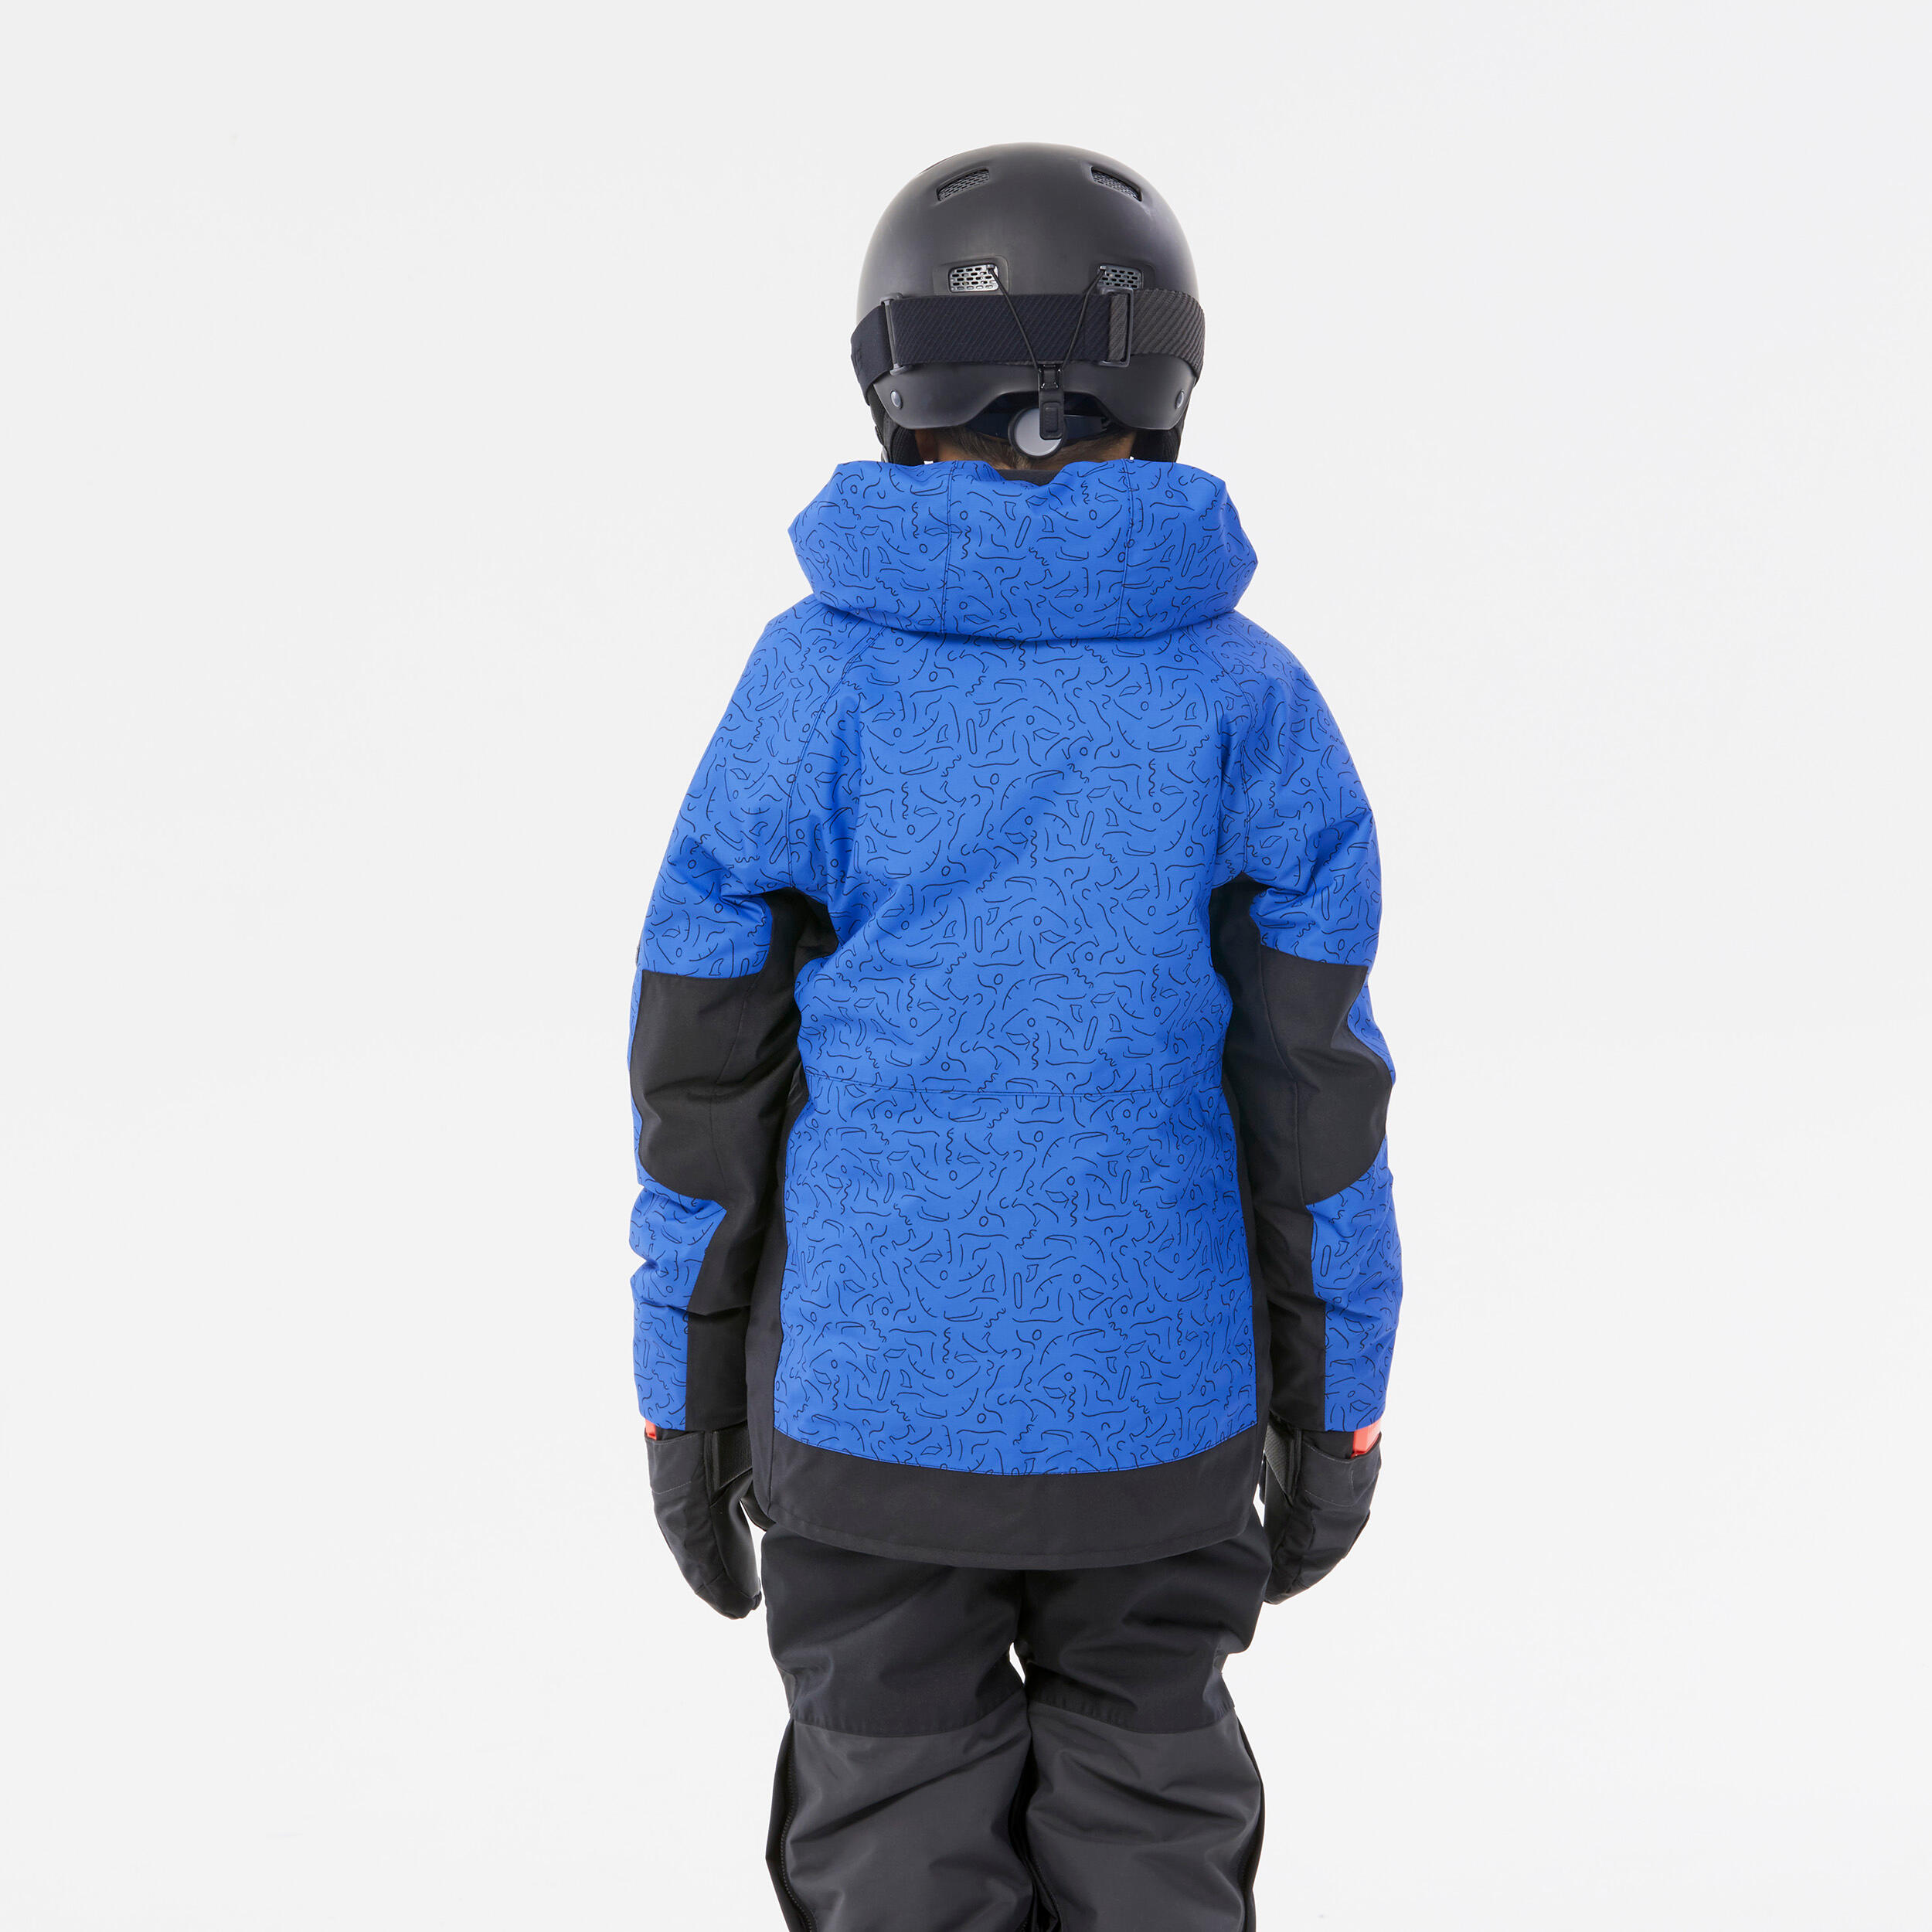 KIDS’ SNOWBOARD ENFANT SNB 500 JACKET – park blue design 7/16